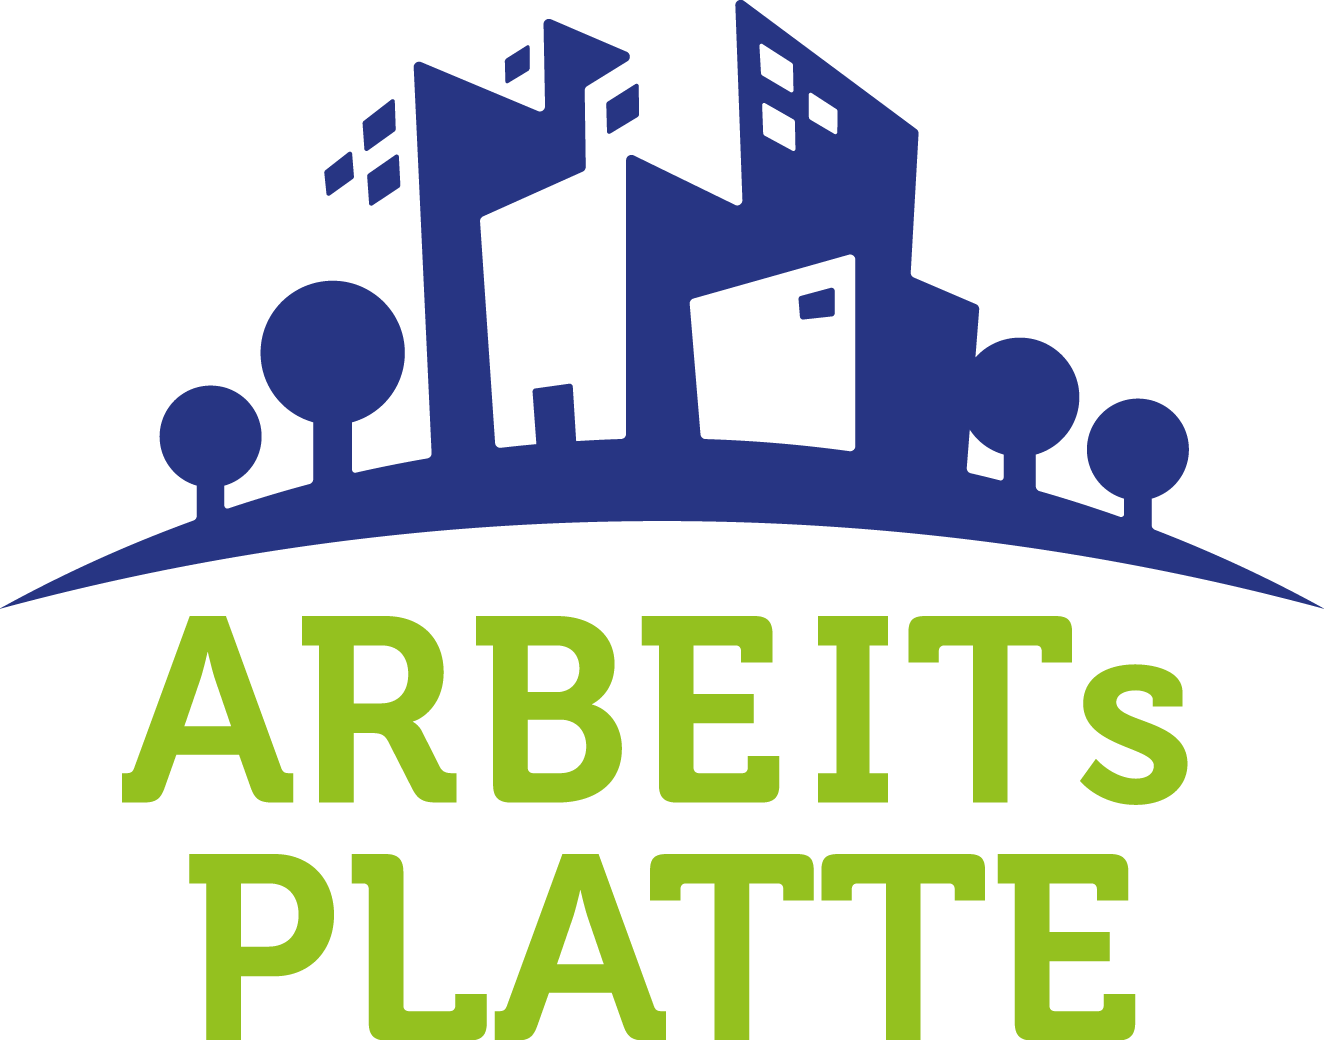 ARBEITsPLATTE_Logo_blau_grün_HG_transparent